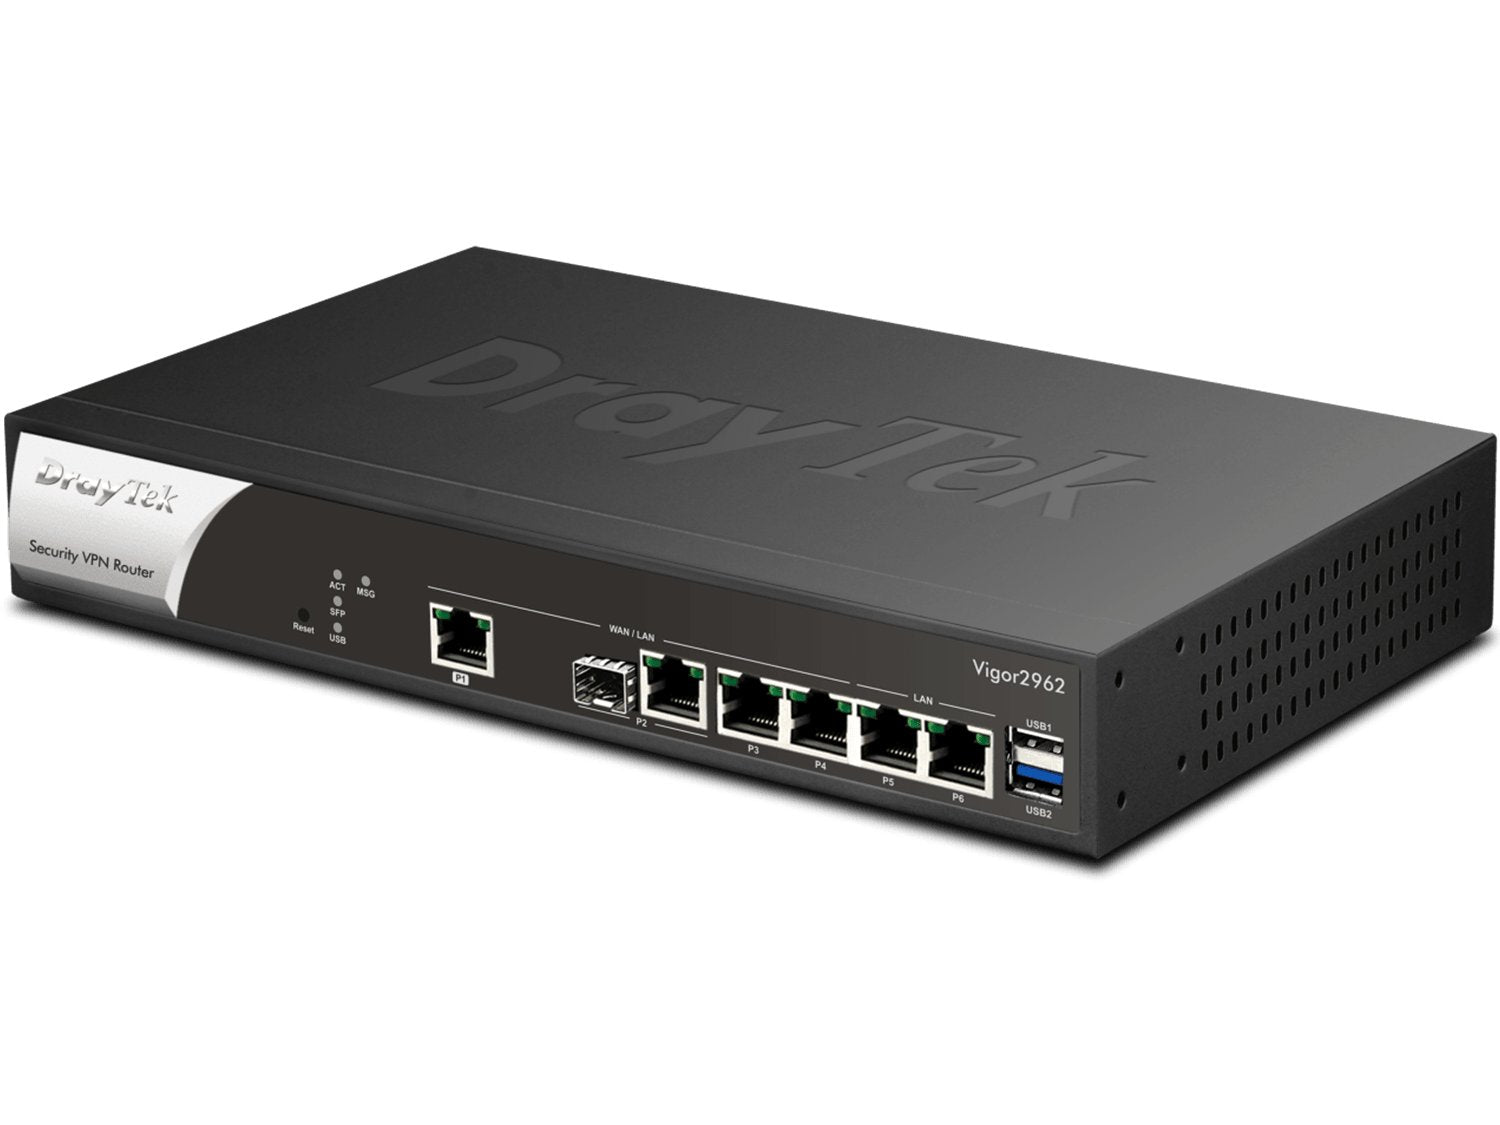 DrayTek Vigor2962 Dual-WAN Router/VPN Gateway Vigor2962 - The Telecom Spot